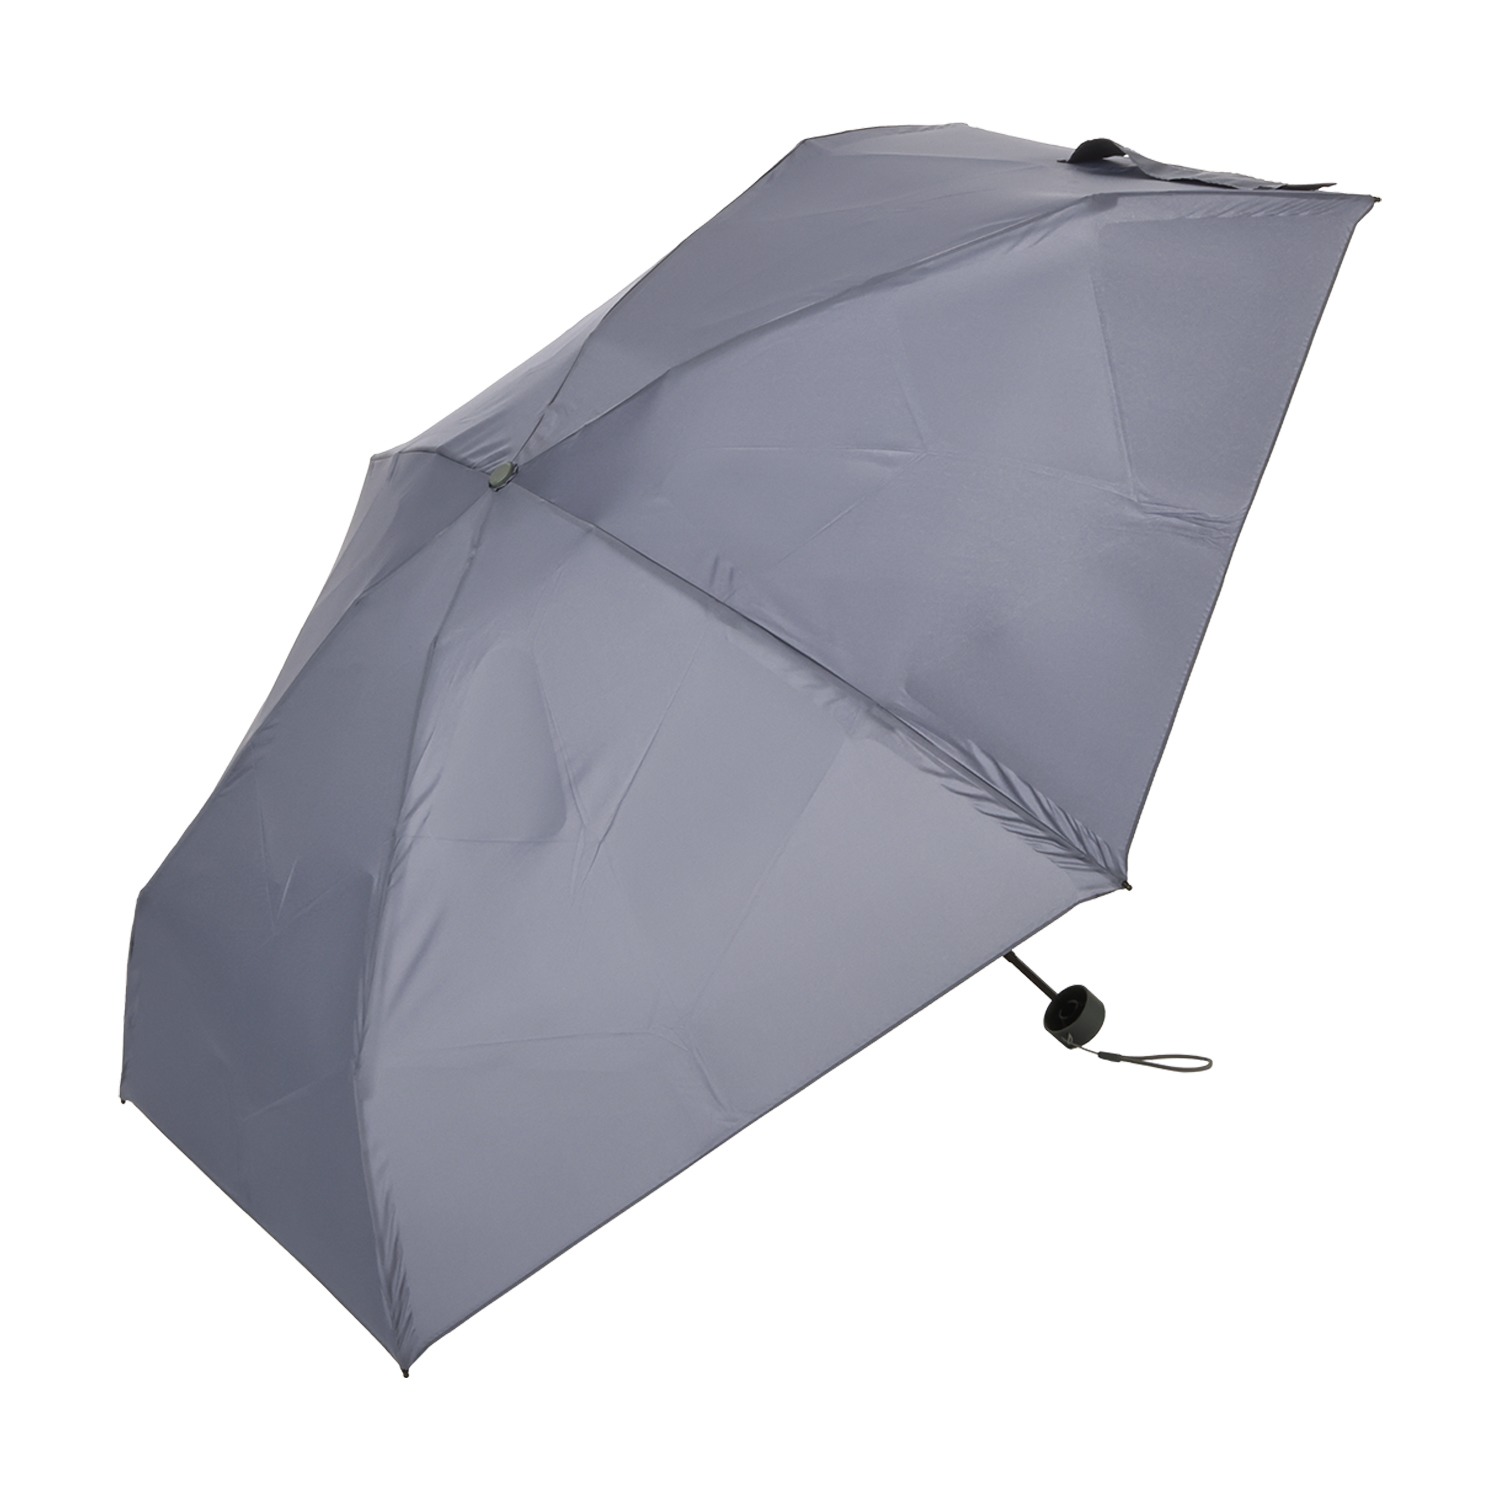 ウォーターフロント “クイックシャット ポケミニ” たたむの簡単ミニサイズ 折りたたみ傘